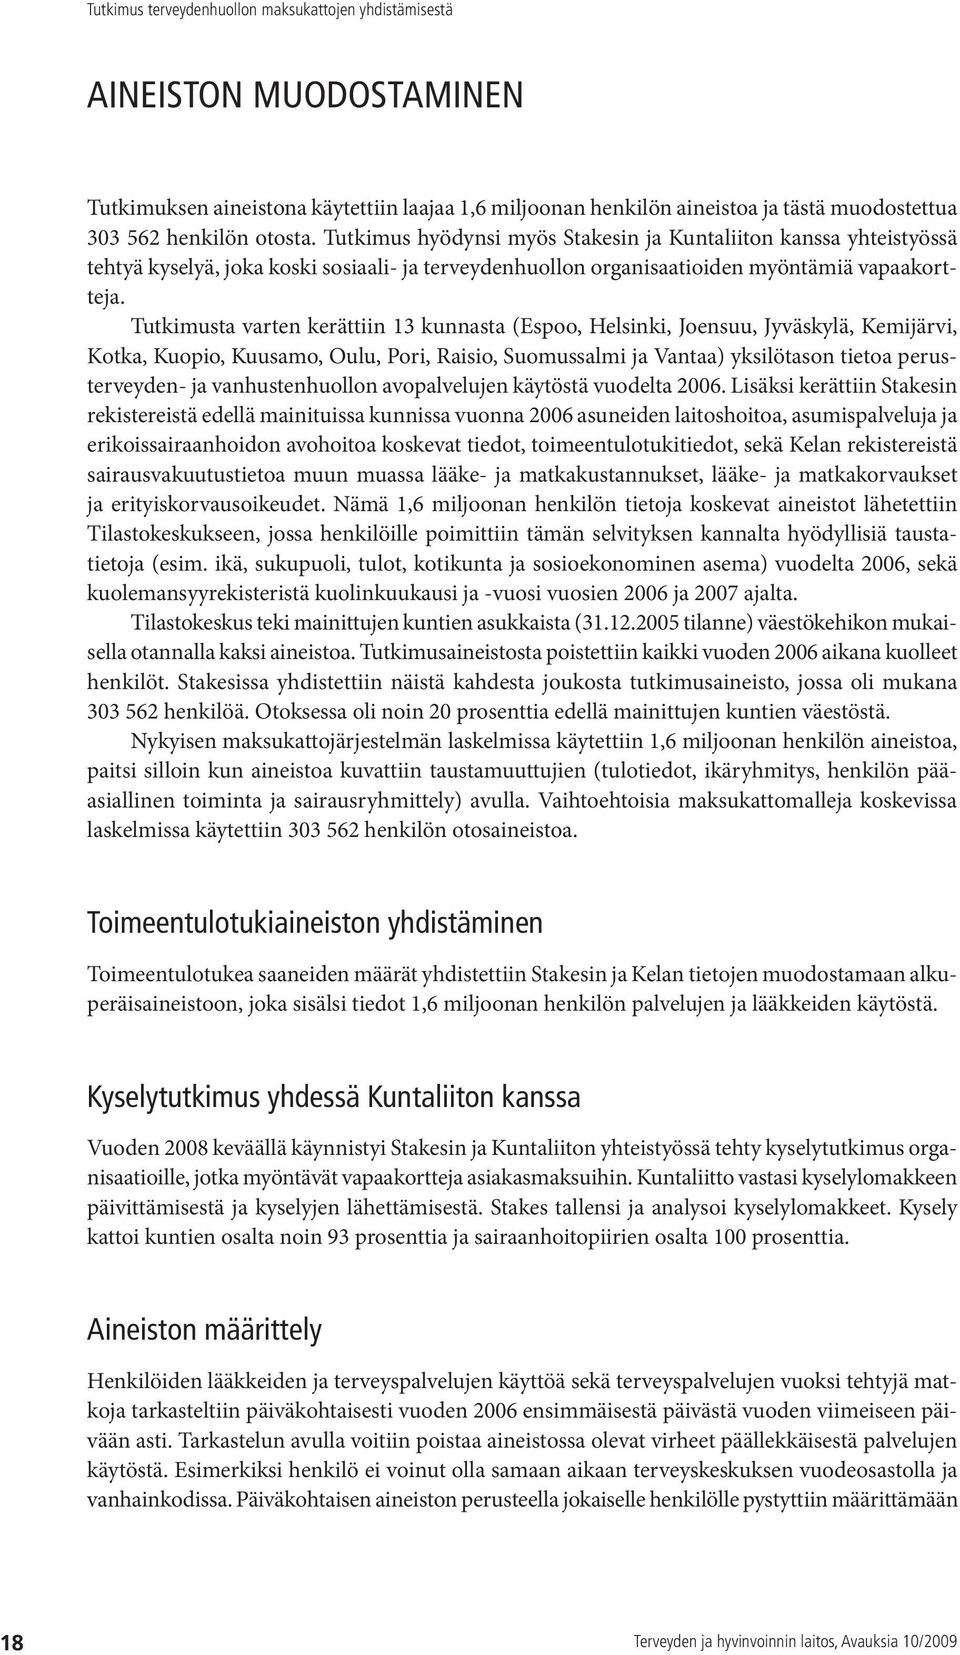 Tutkimusta varten kerättiin 13 kunnasta (Espoo, Helsinki, Joensuu, Jyväskylä, Kemijärvi, Kotka, Kuopio, Kuusamo, Oulu, Pori, Raisio, Suomussalmi ja Vantaa) yksilötason tietoa perusterveyden- ja